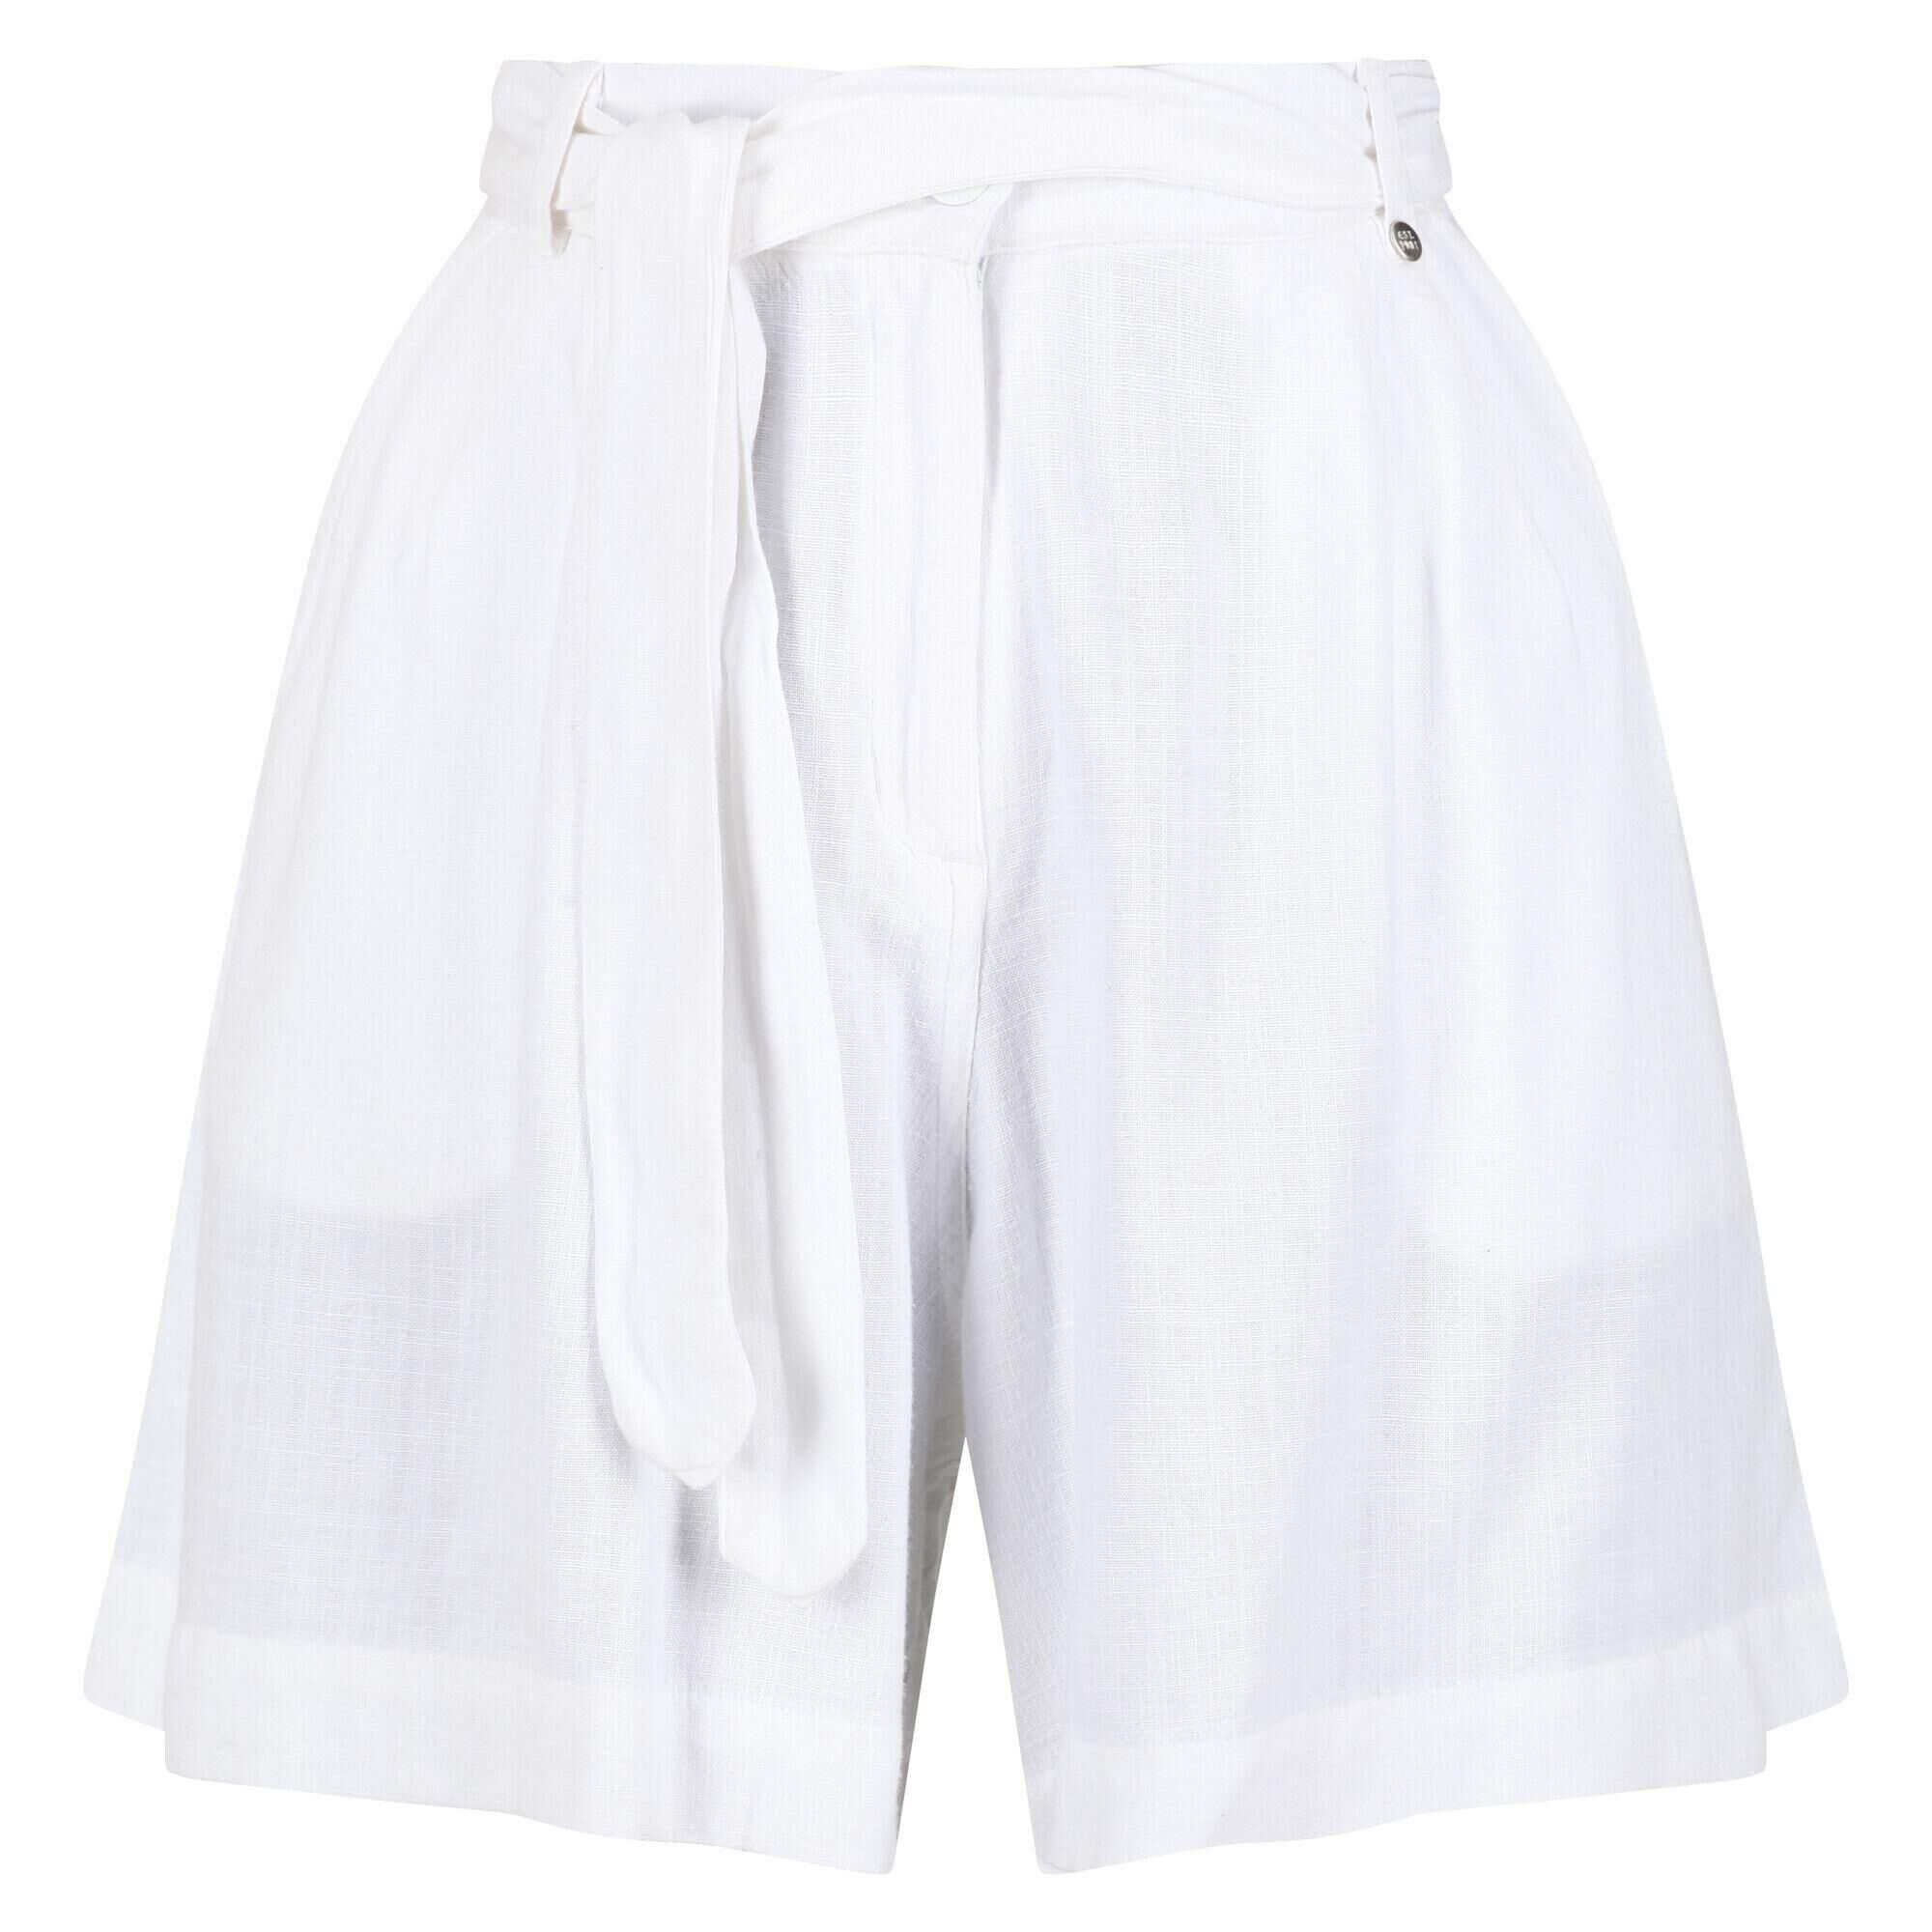 REGATTA Womens/Ladies Sabela Paper Bag Shorts (White)